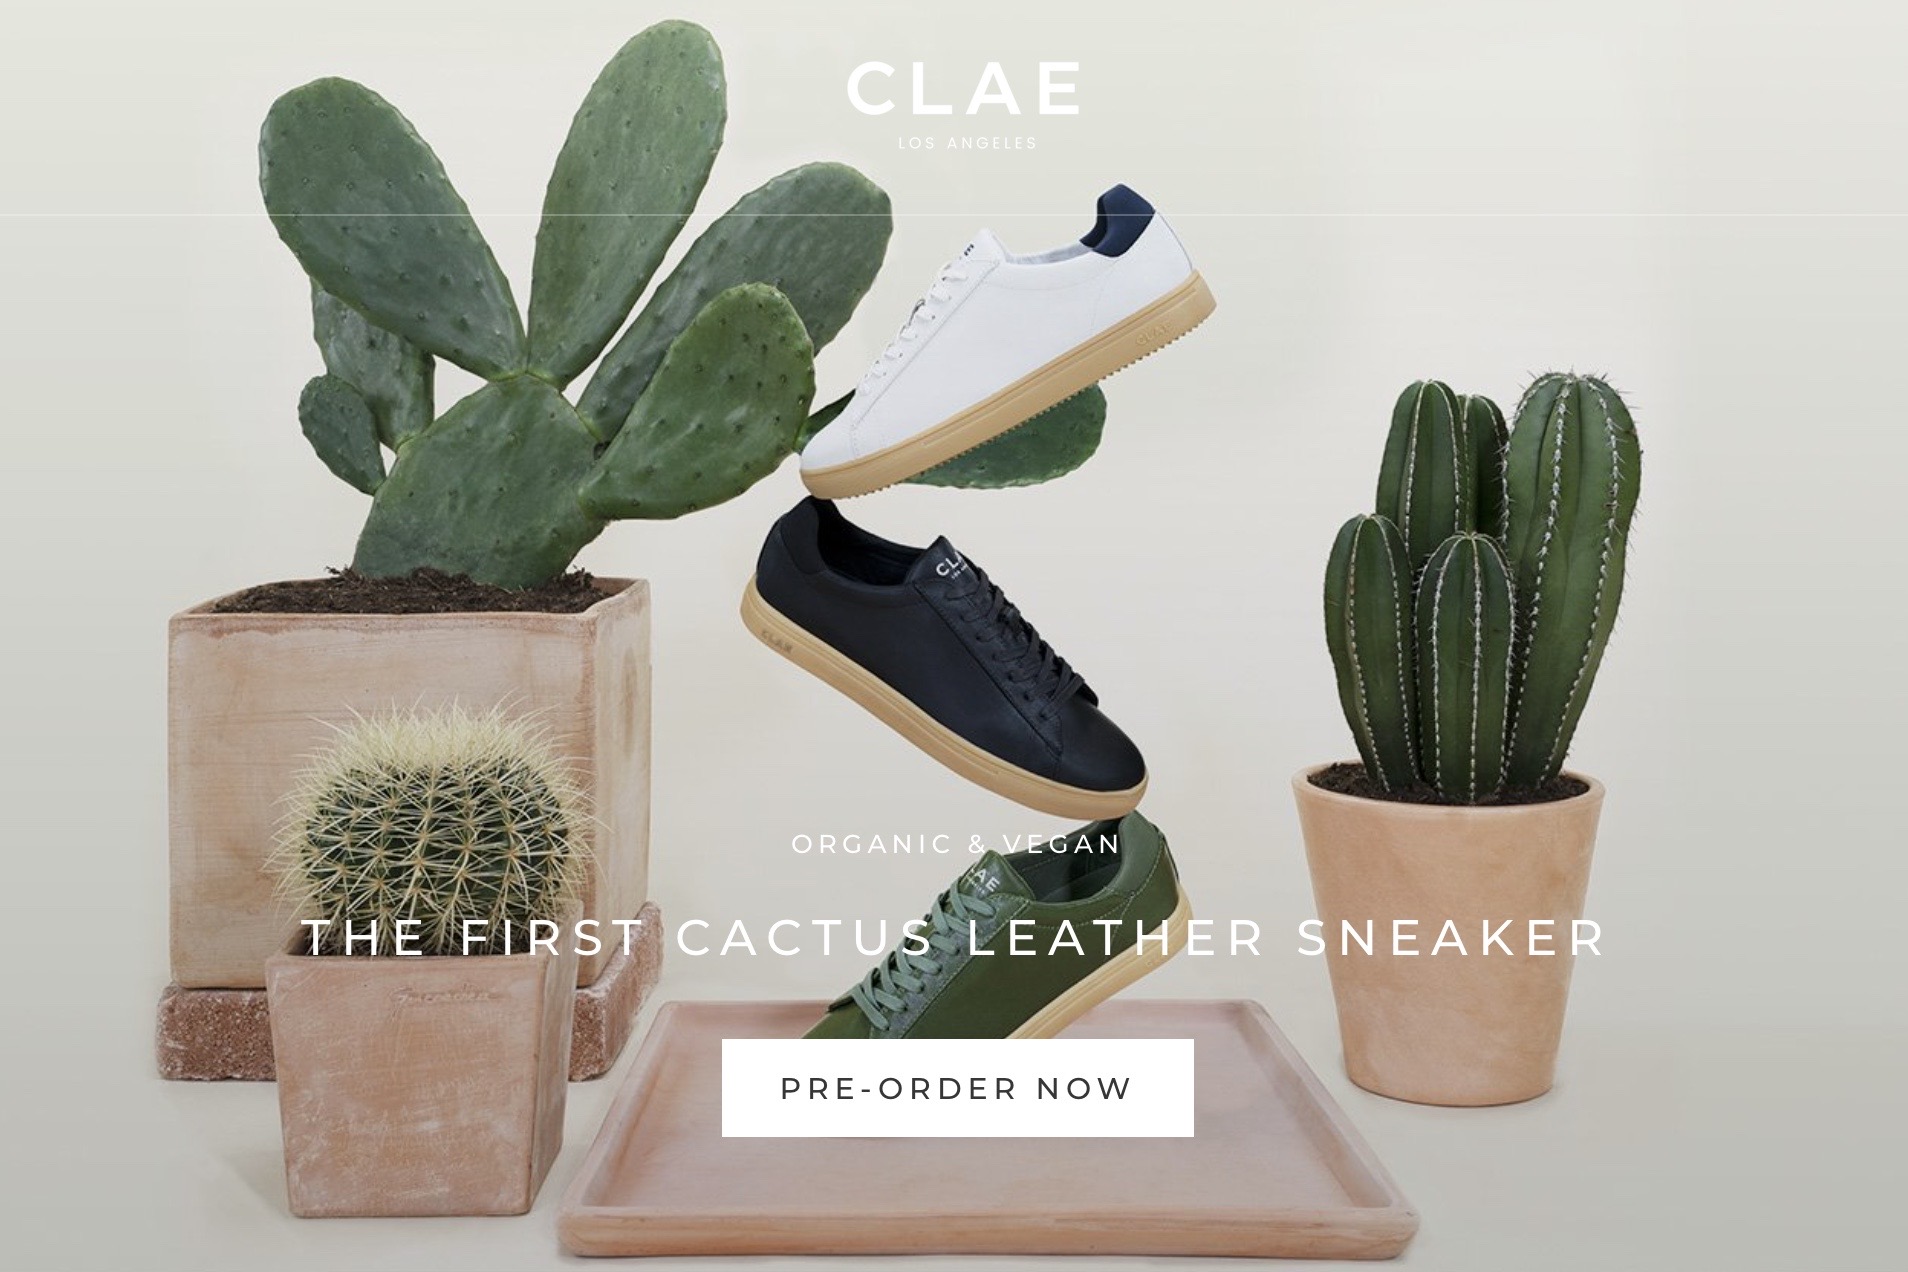 洛杉矶运动鞋品牌 Clae 推出首款仙人掌材质的“皮革”运动鞋